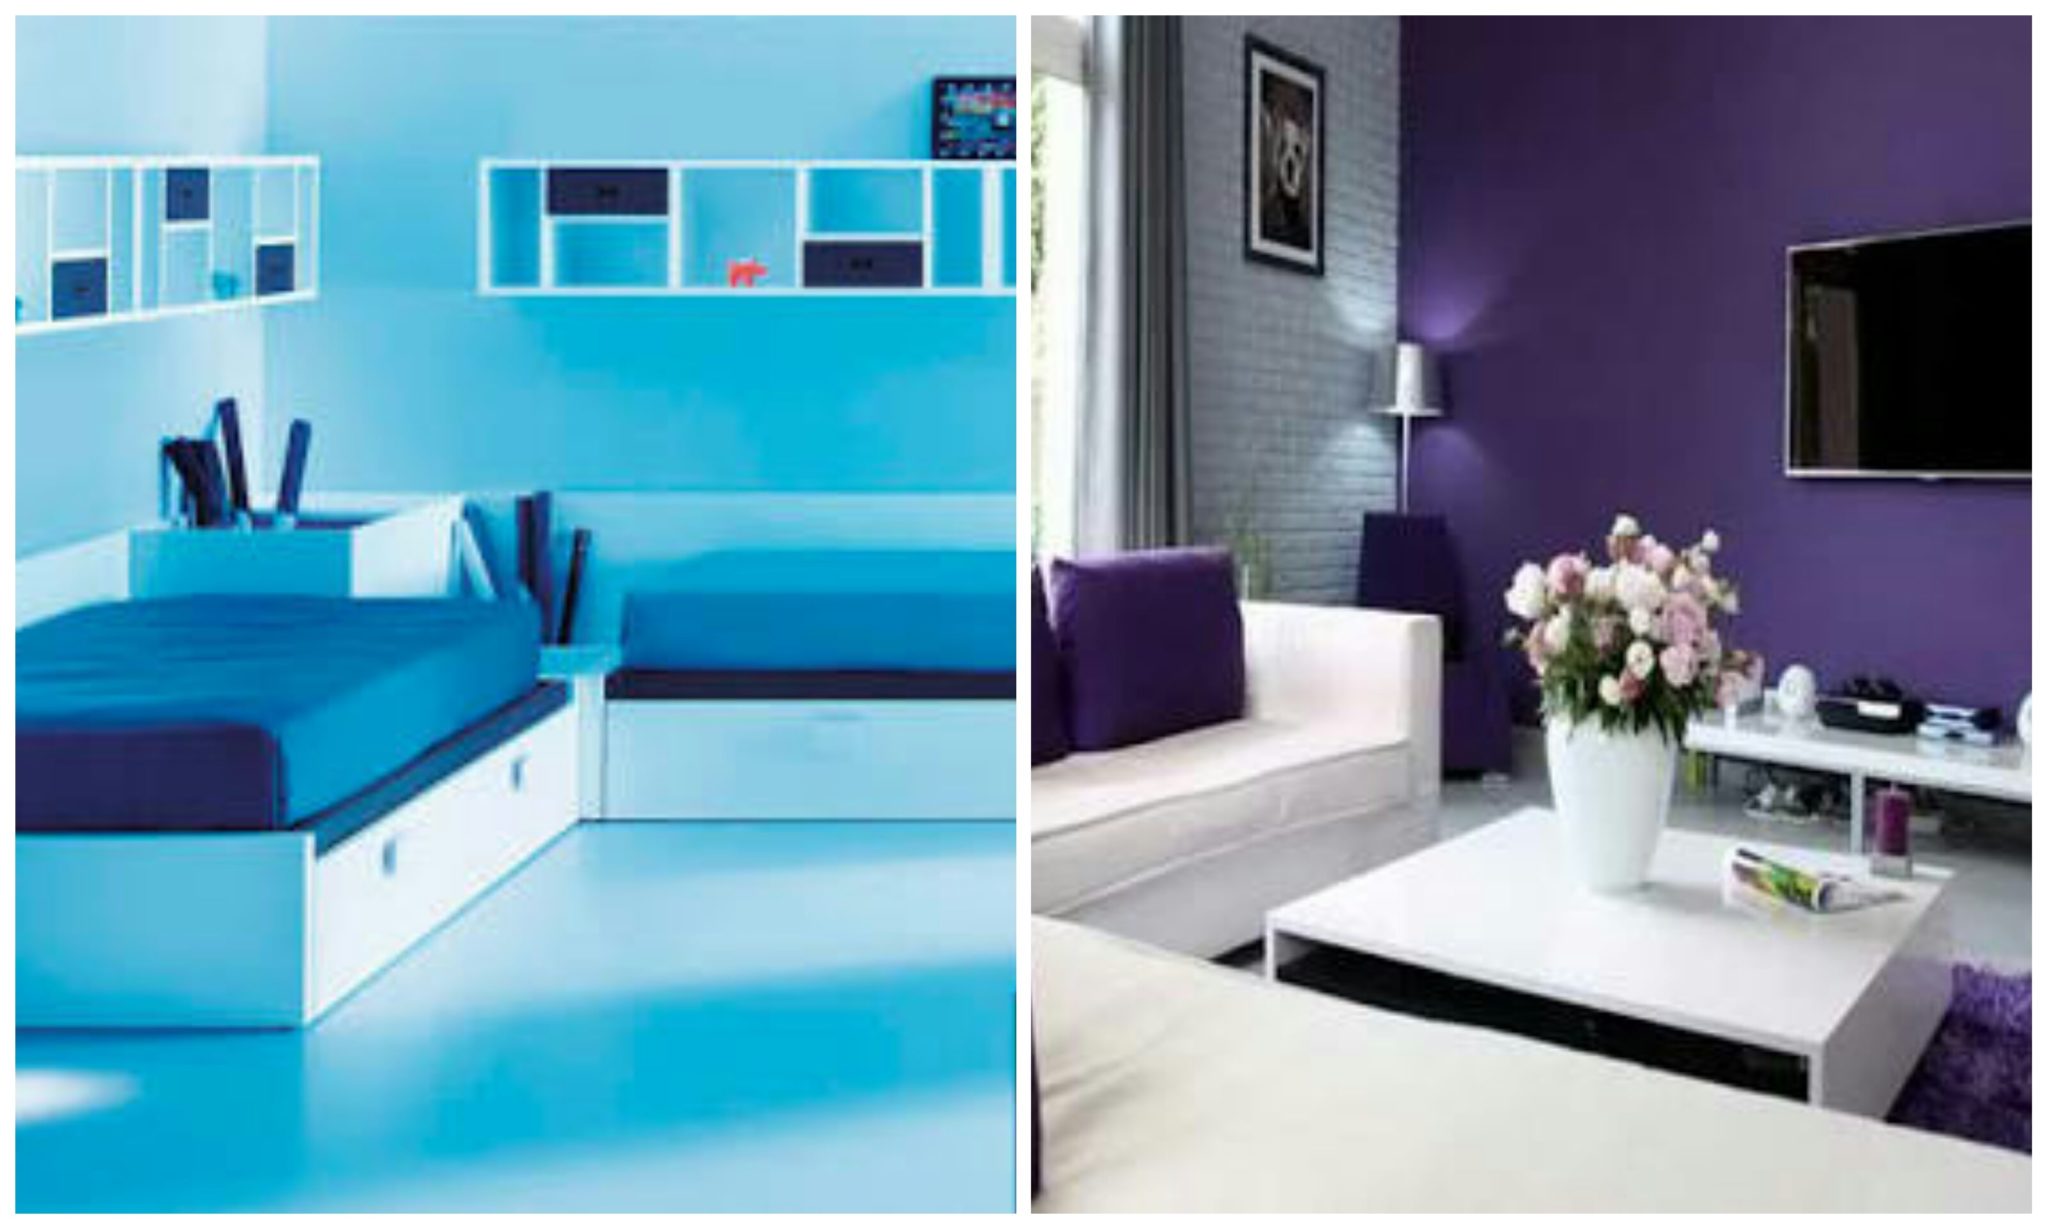 Single coloured boring room vs. Two-coloured bright room